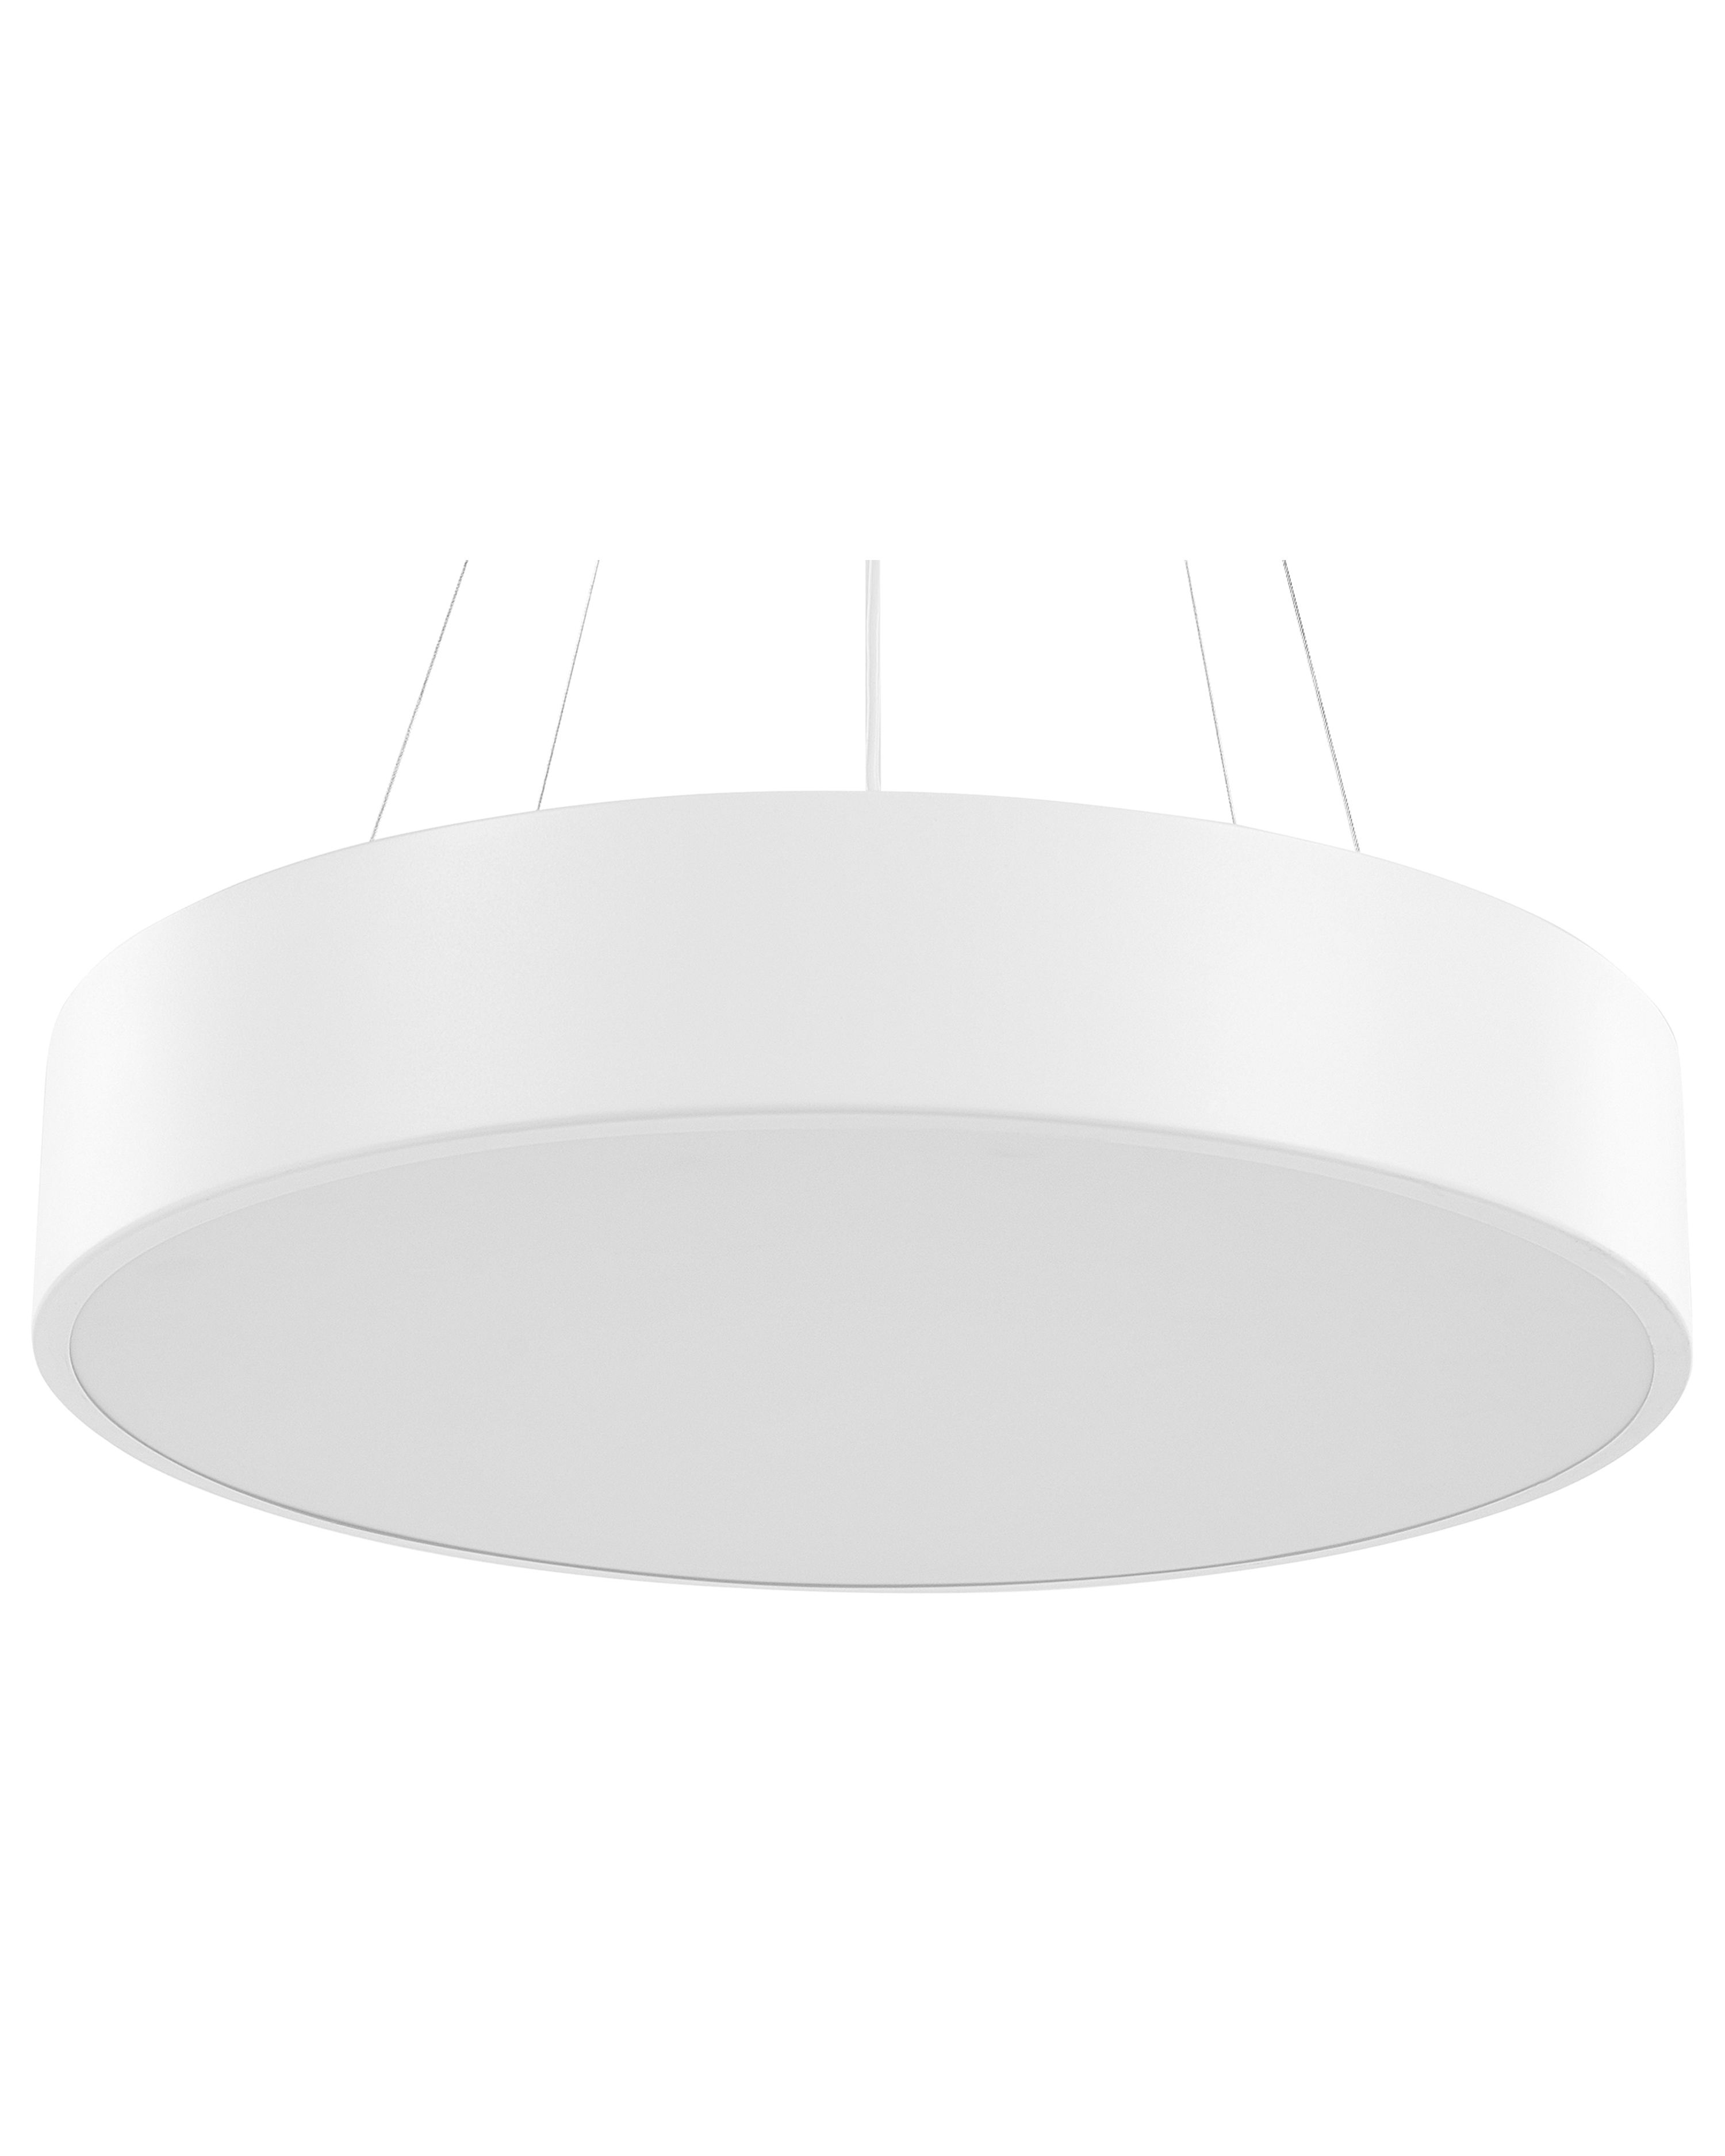 Lampe à LED suspendue blanche en métal BALILI_824640